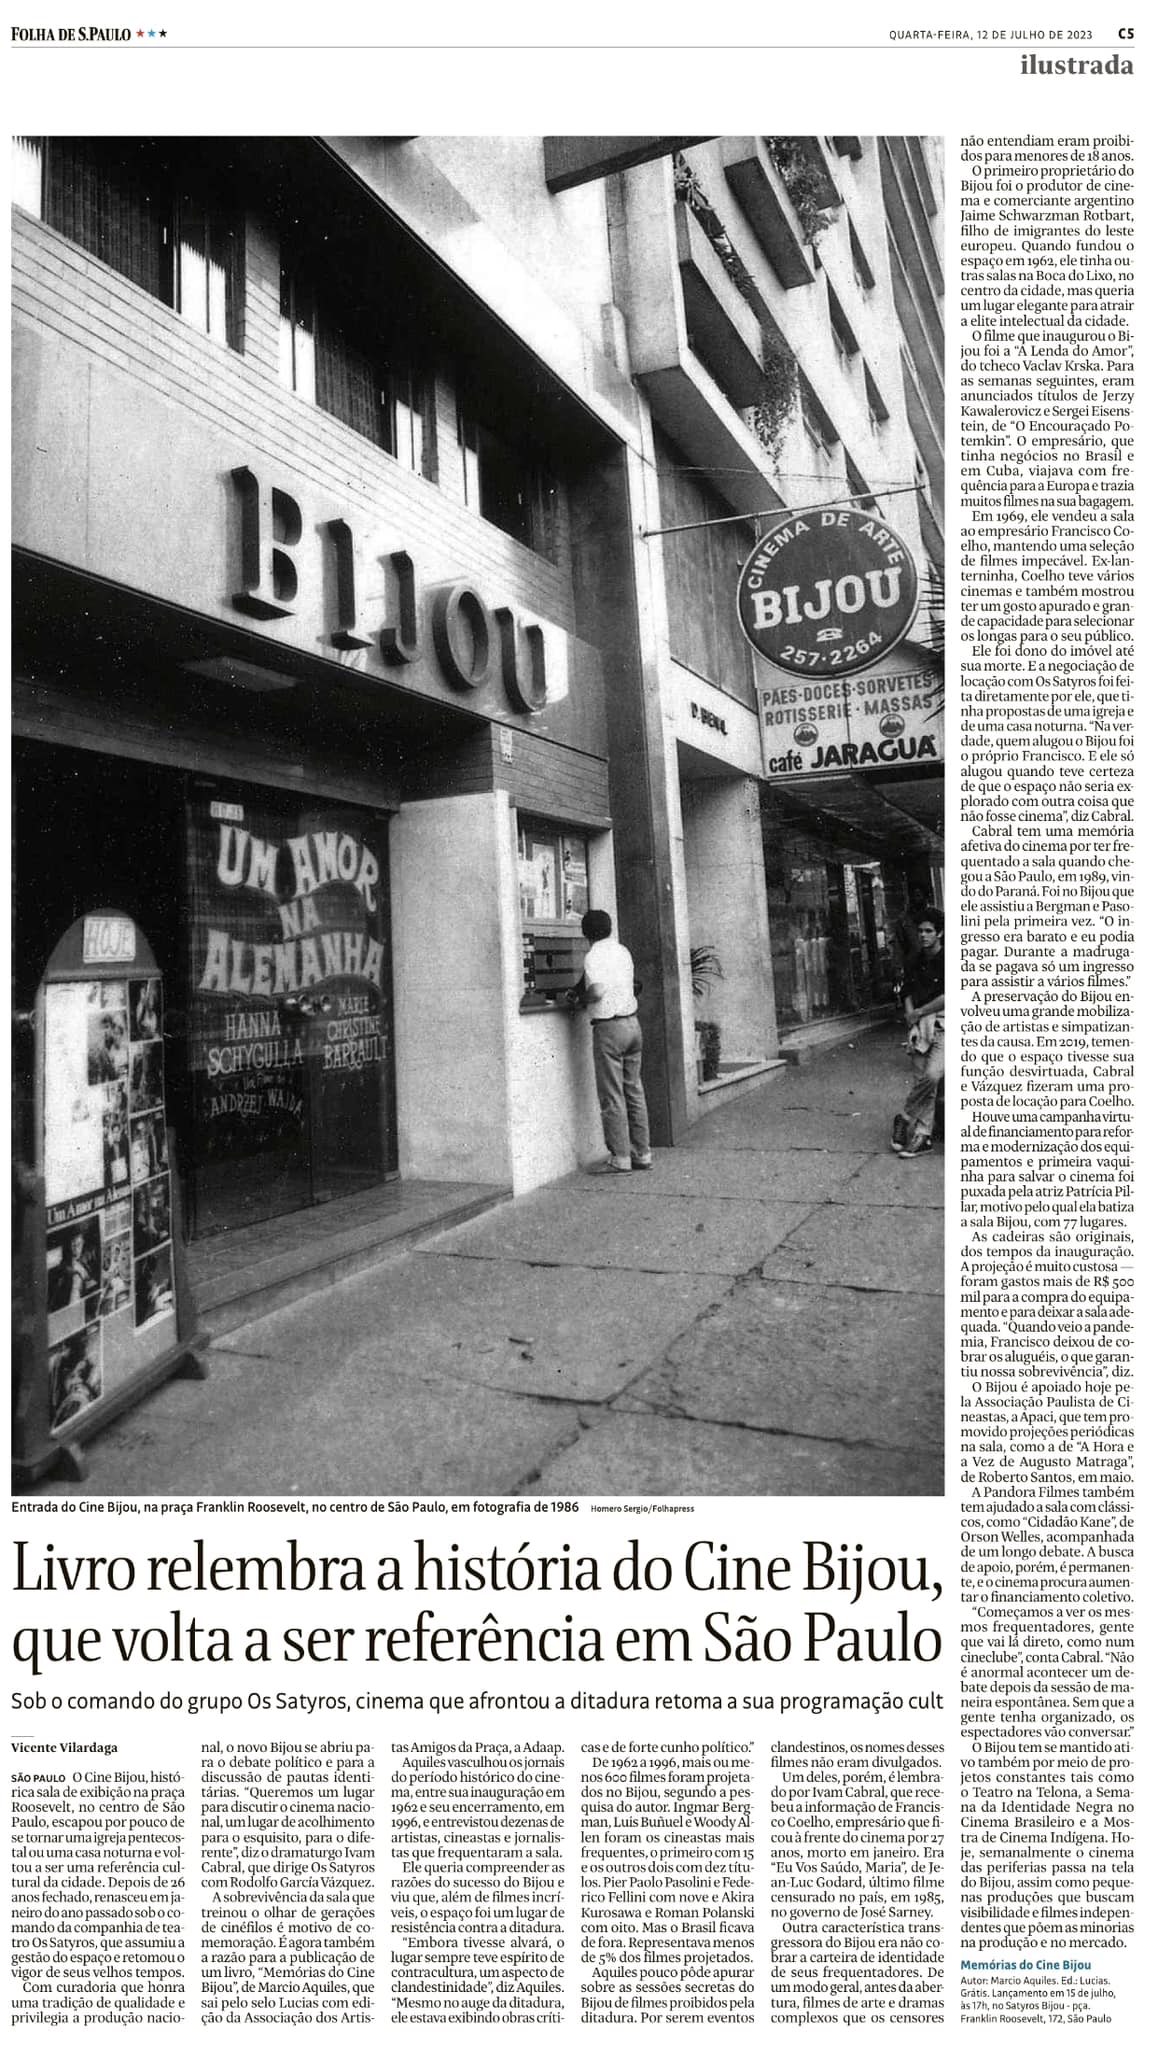 Reportagem da Folha de S.Paulo sobre o livro "Memórias do Cine Bijou". | Foto: Reprodução